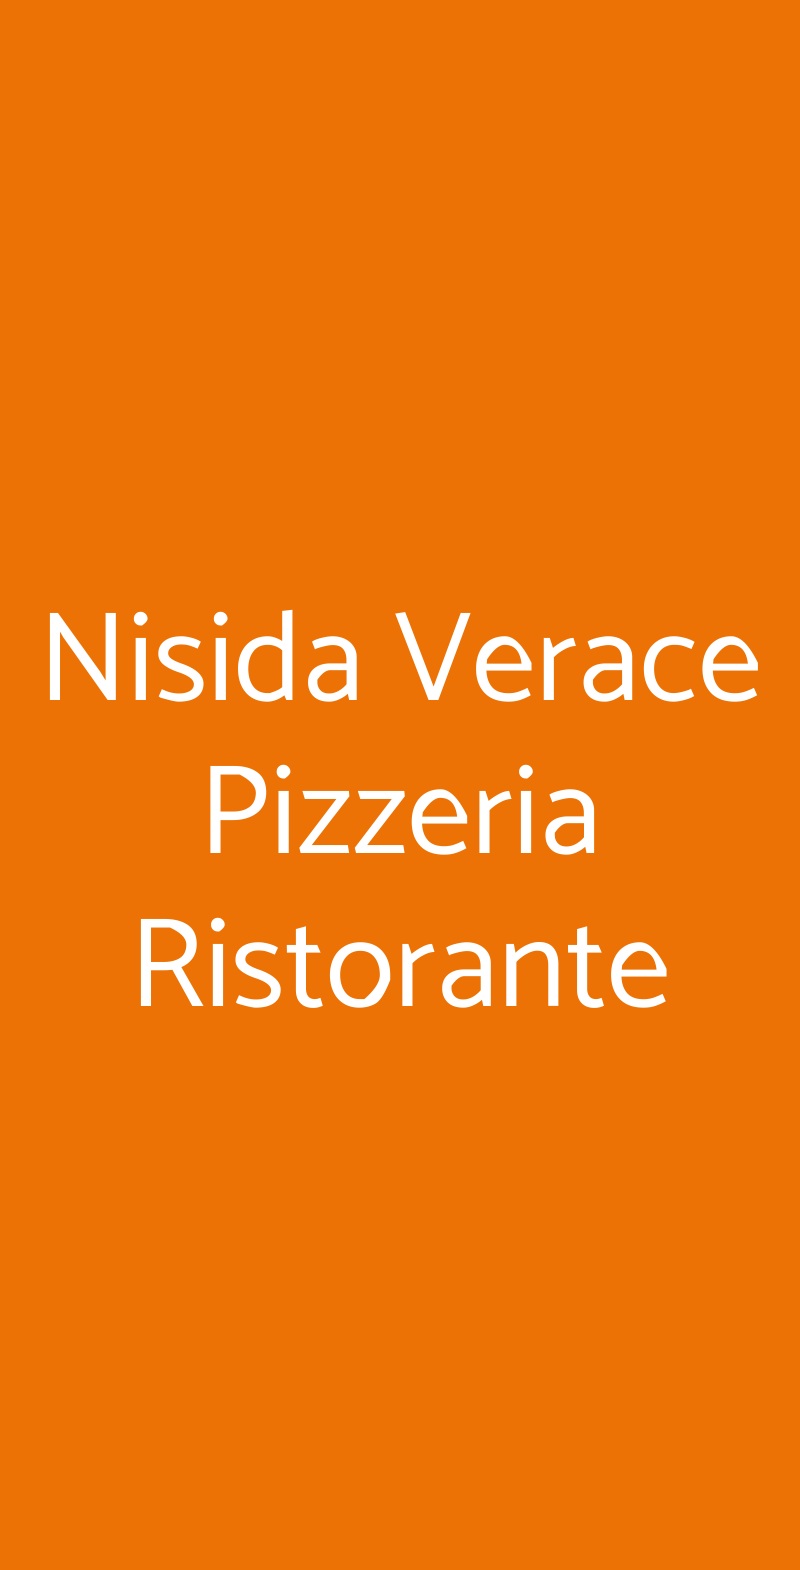 Nisida Verace Pizzeria Ristorante Milano menù 1 pagina